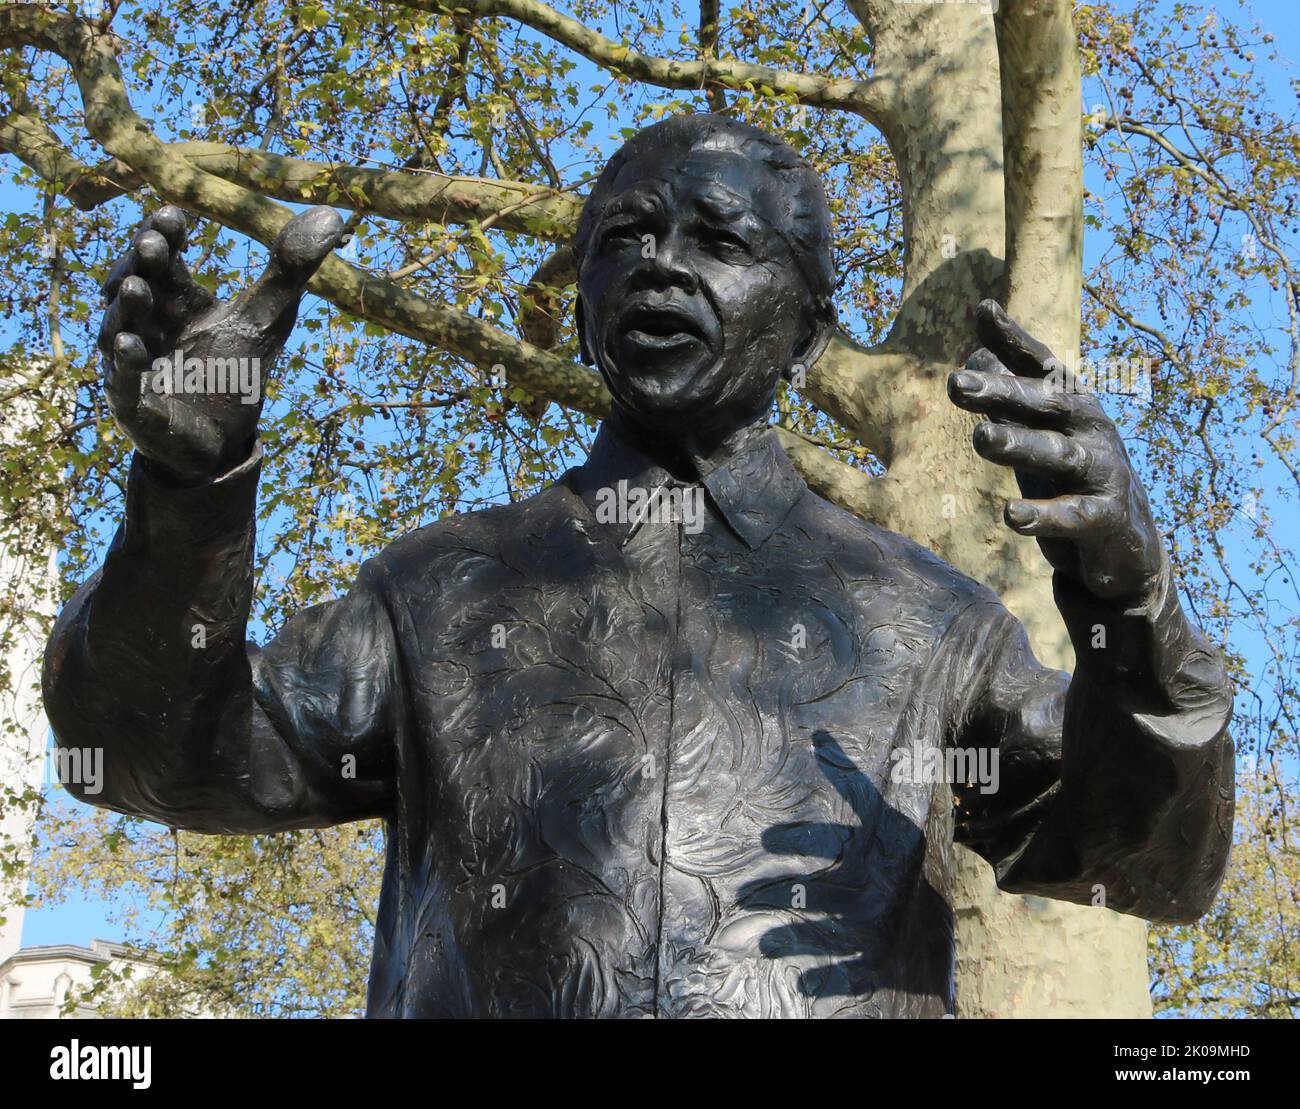 Bronzeskulptur von Nelson Mandela auf dem Parliament Square, London. Nelson Mandela war ehemaliger Präsident Südafrikas und Anti-Apartheid-Aktivist. Ursprünglich 2001 von Donald Woods an Mandela vorgeschlagen, wurde nach dem Tod von Woods ein Fonds eingerichtet und von Woods Frau und Lord Richard Attenborough geleitet. Stockfoto